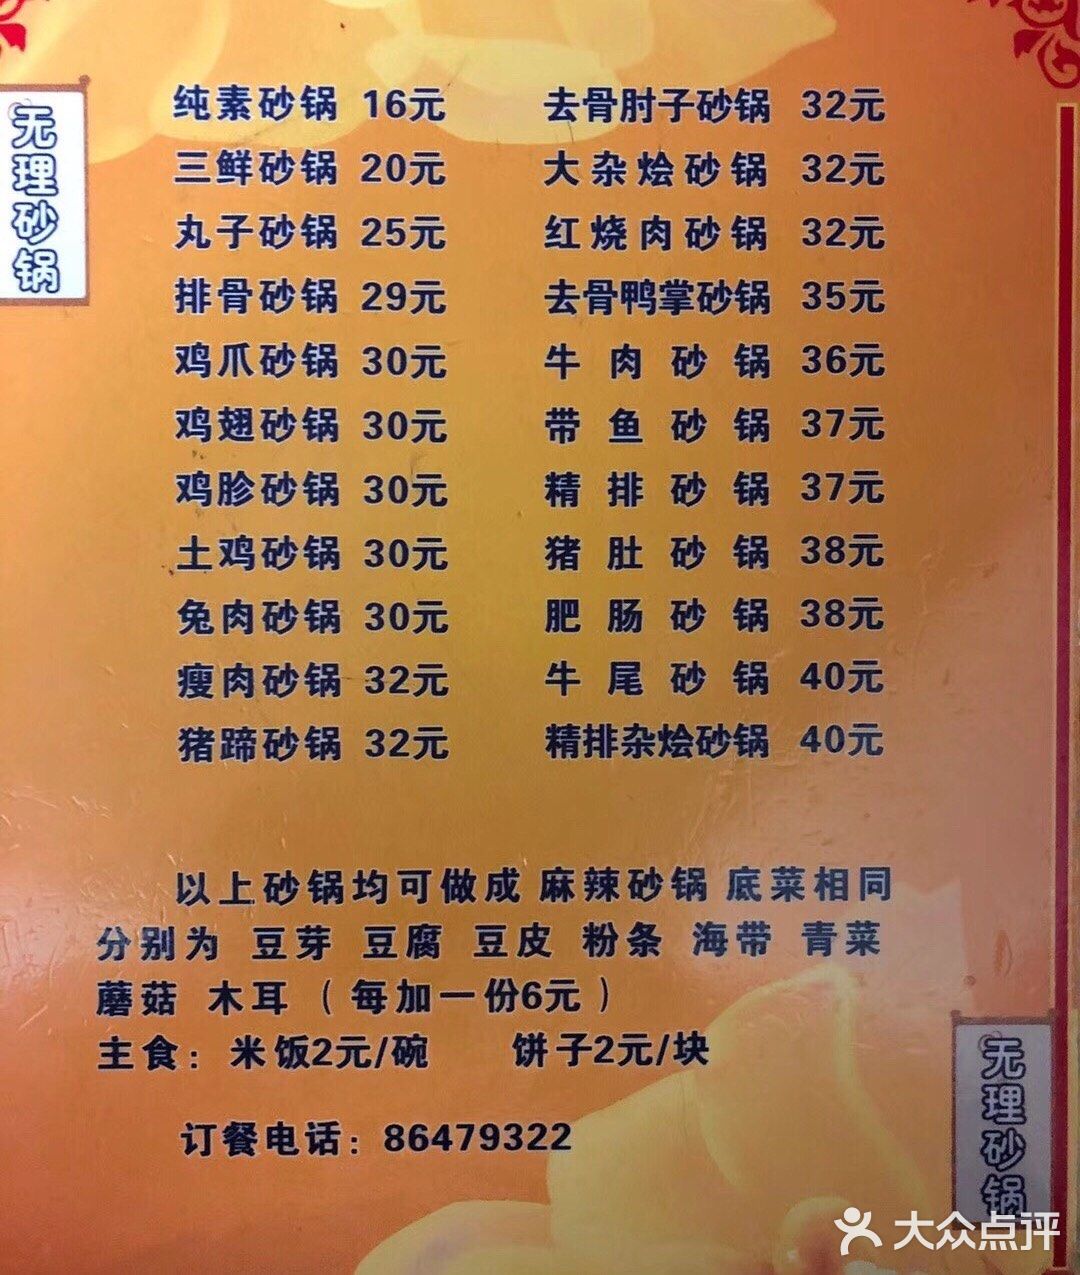 为什么这么说因为价格太贵了丸子砂锅25块